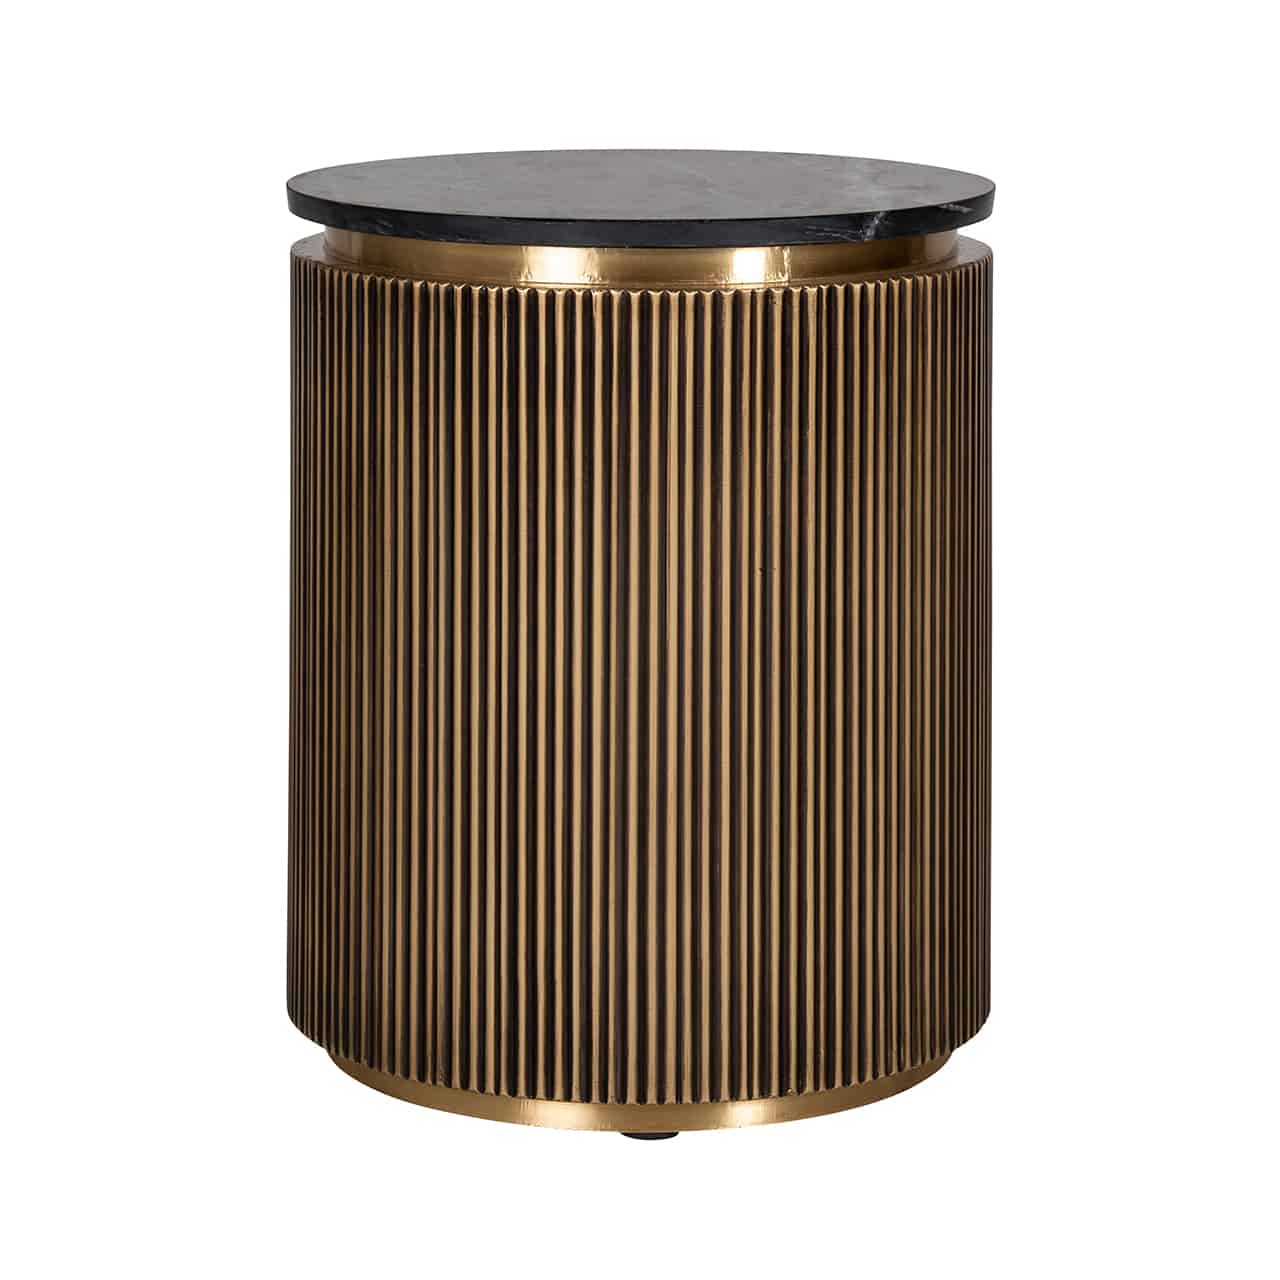 Beistelltisch, zylinderförmig in gold mit umlaufender, vertikaler Riffelung und einer runden Tischplatte aus schwarzem Marmor.